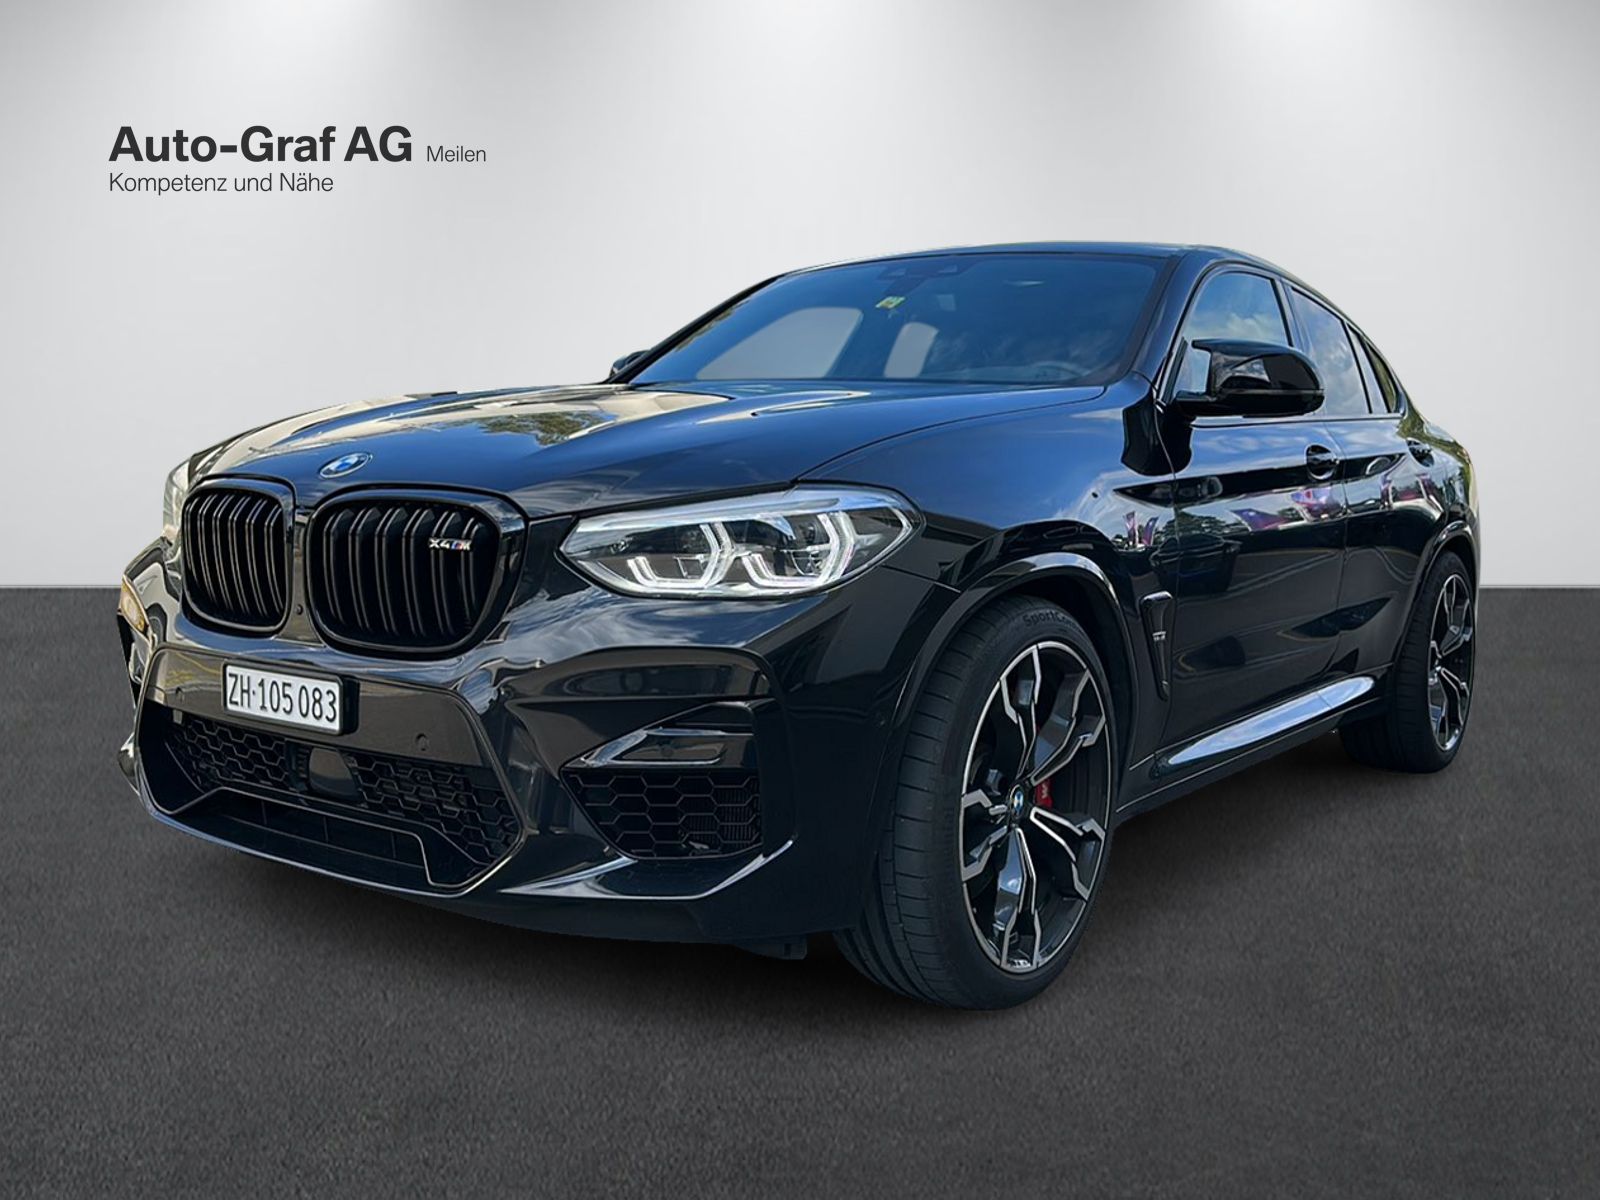 Auto-Graf AG BMW - Kompetenz und Nähe